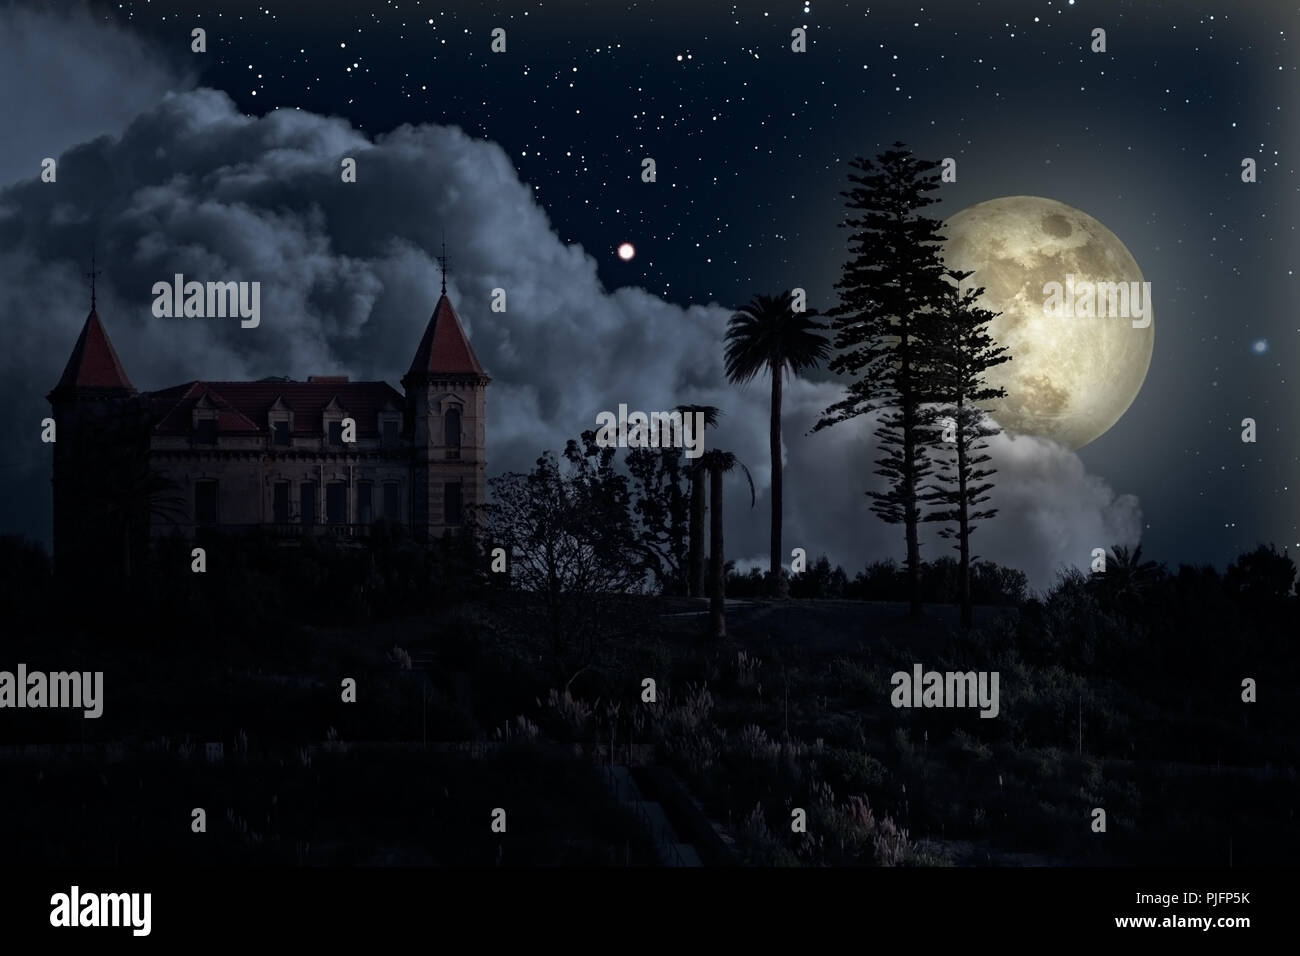 Vieille maison mystérieuse dans une nuit de pleine lune Banque D'Images